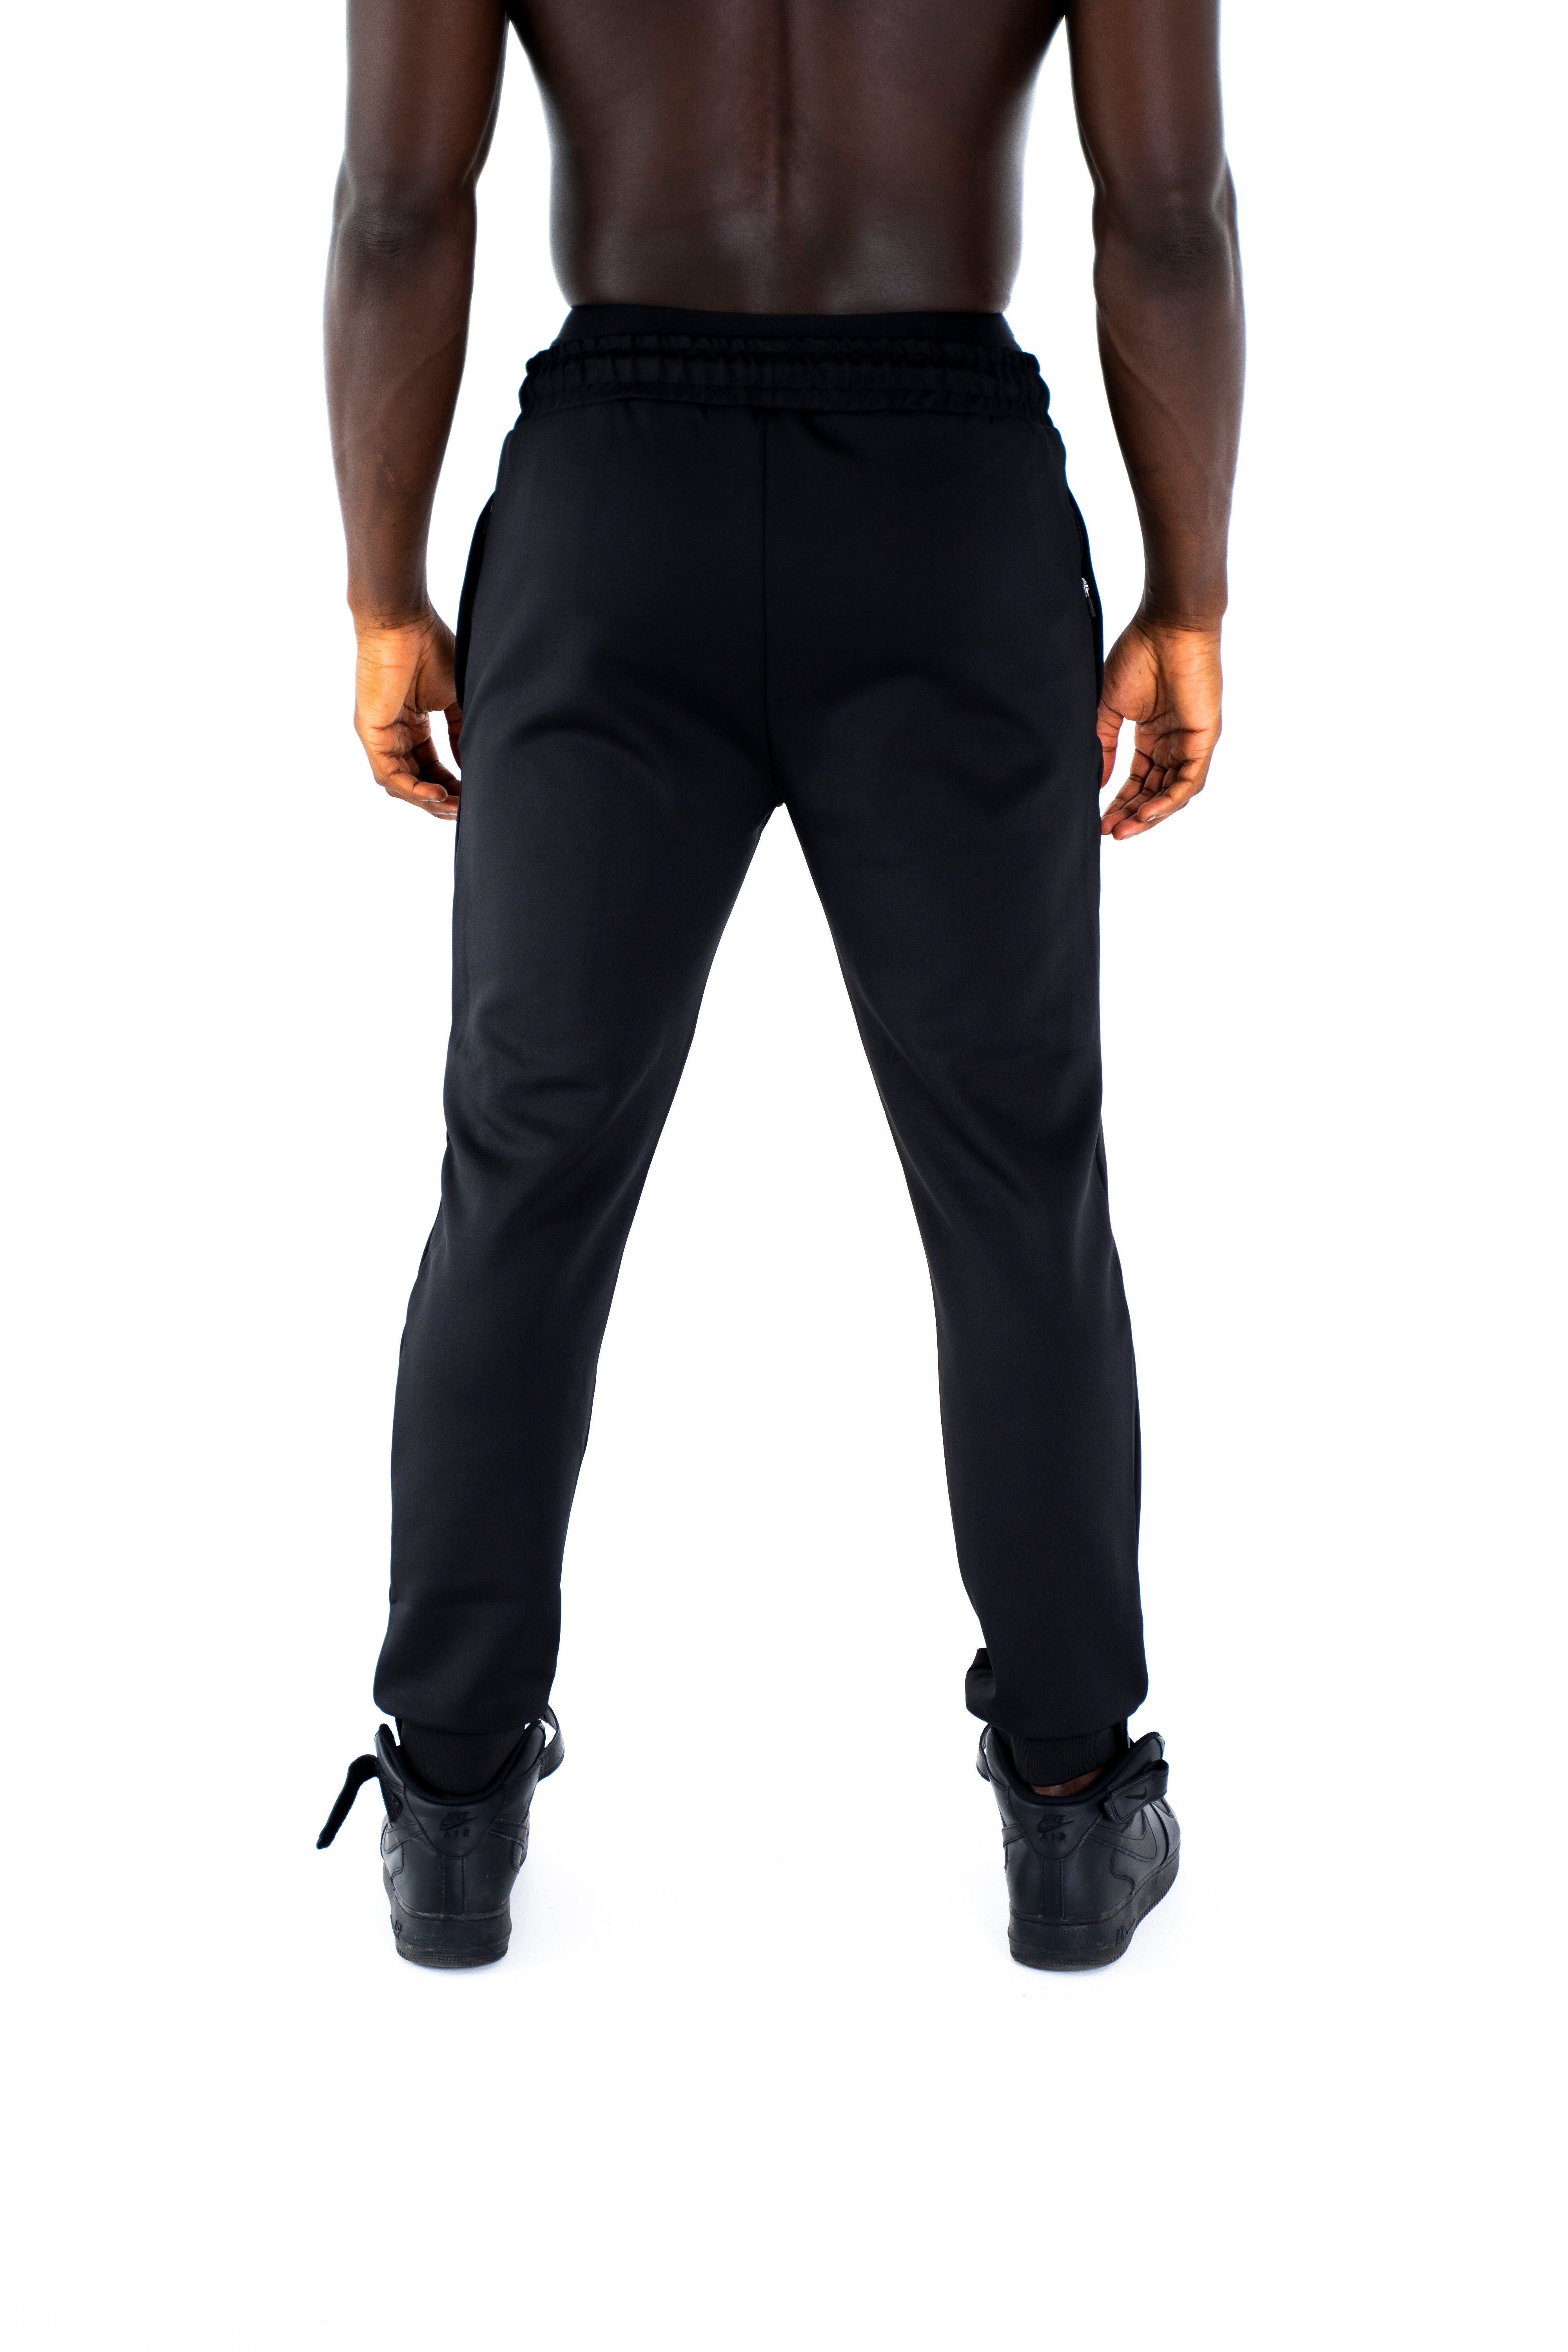 für Trainingsjacke Universum und Schulterschnitt, mit und Fit Sport, Fitness schwarz Freizeit Kapuze Sportwear Trainingsjacke Hoodie Modern